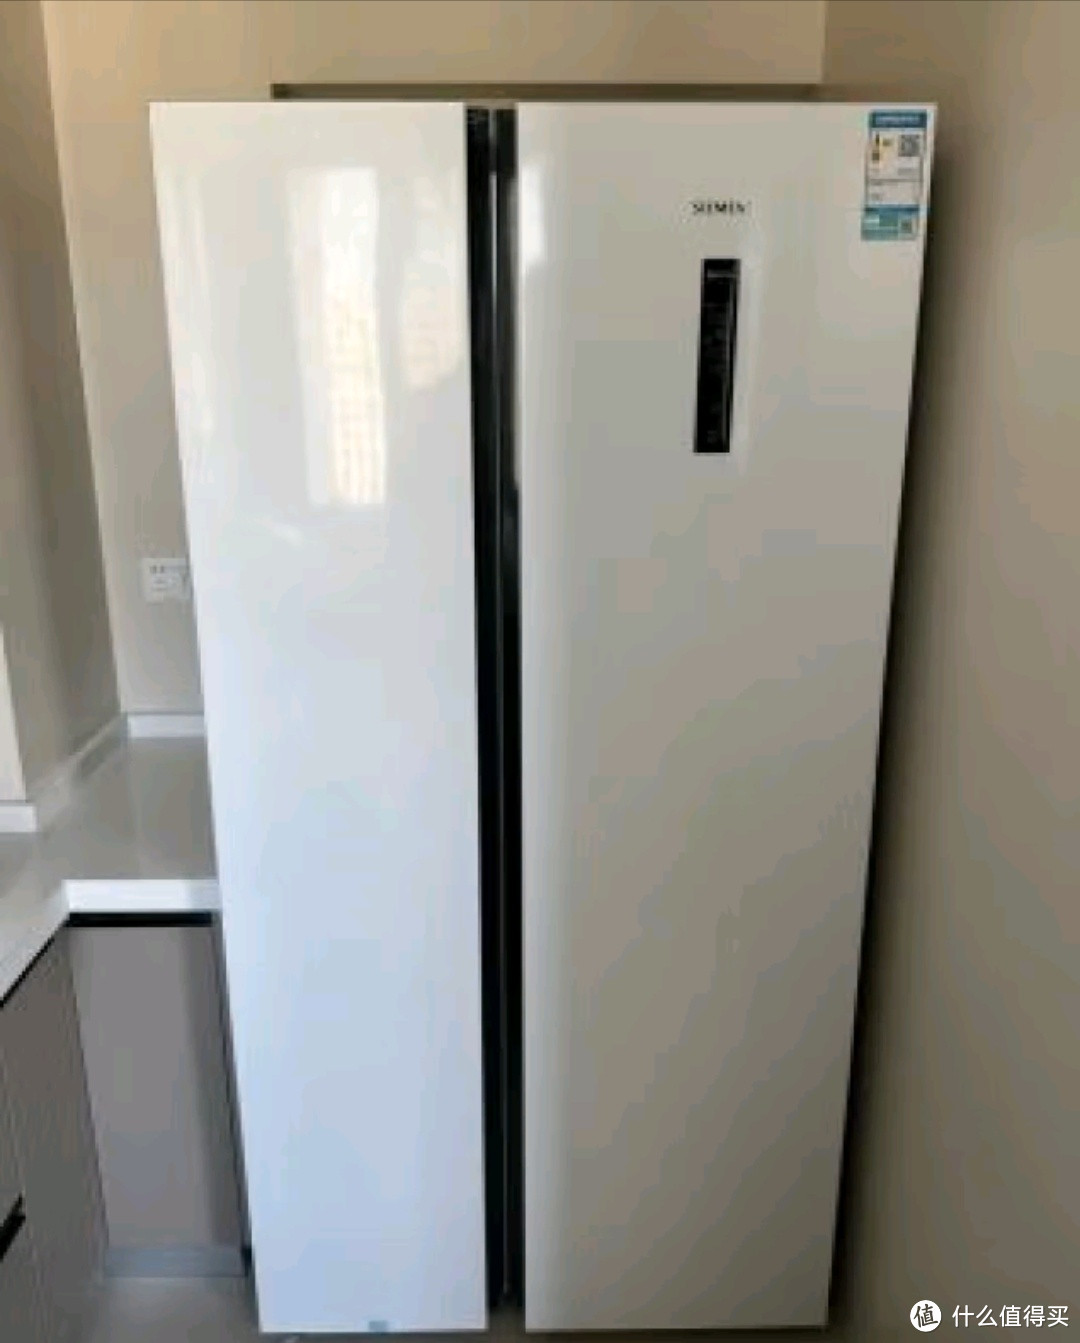 大容量的变频冰箱